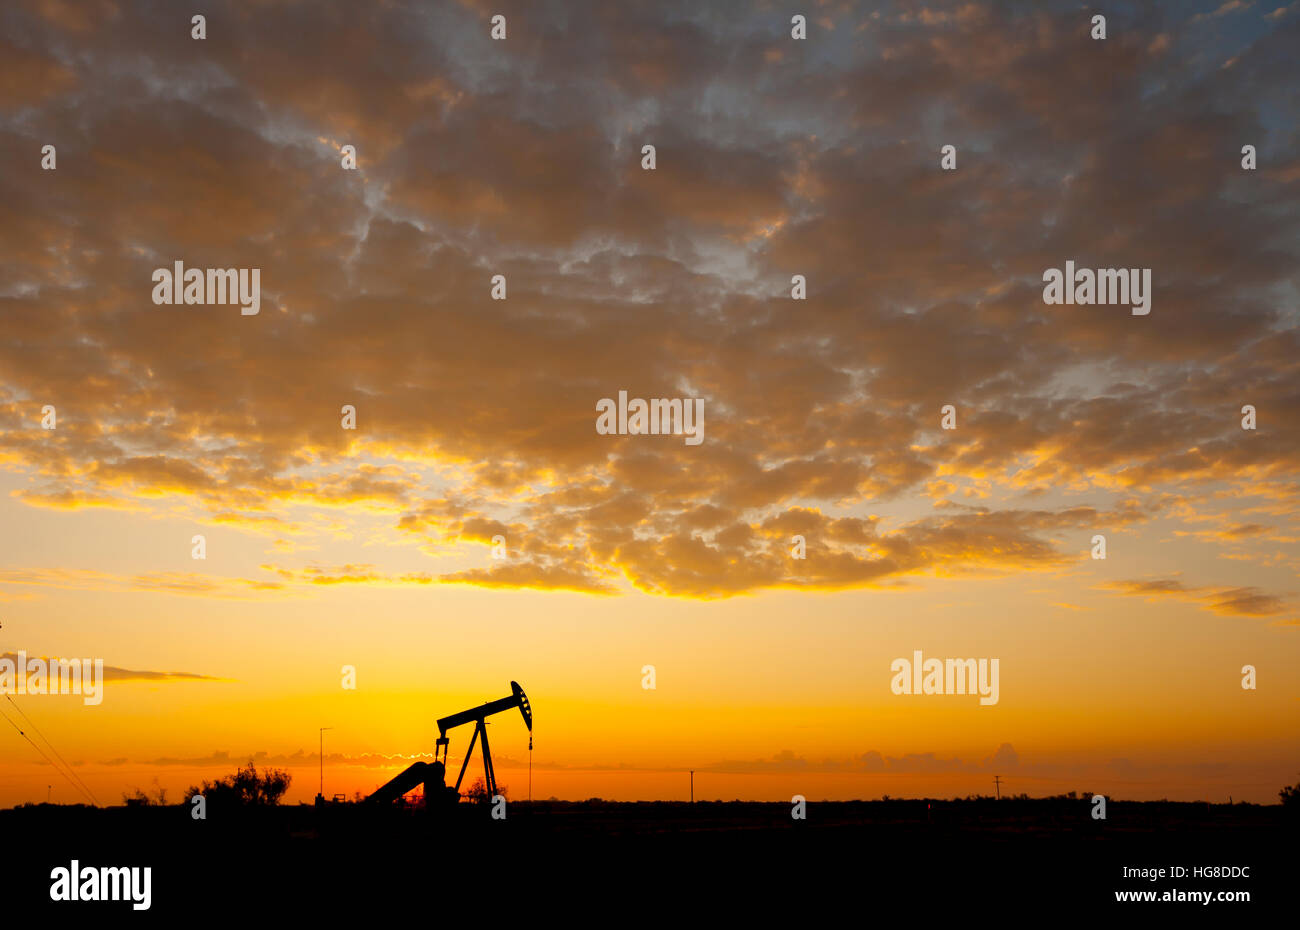 Pompe à huile Silhouette sur terrain contre ciel nuageux pendant le coucher du soleil Banque D'Images